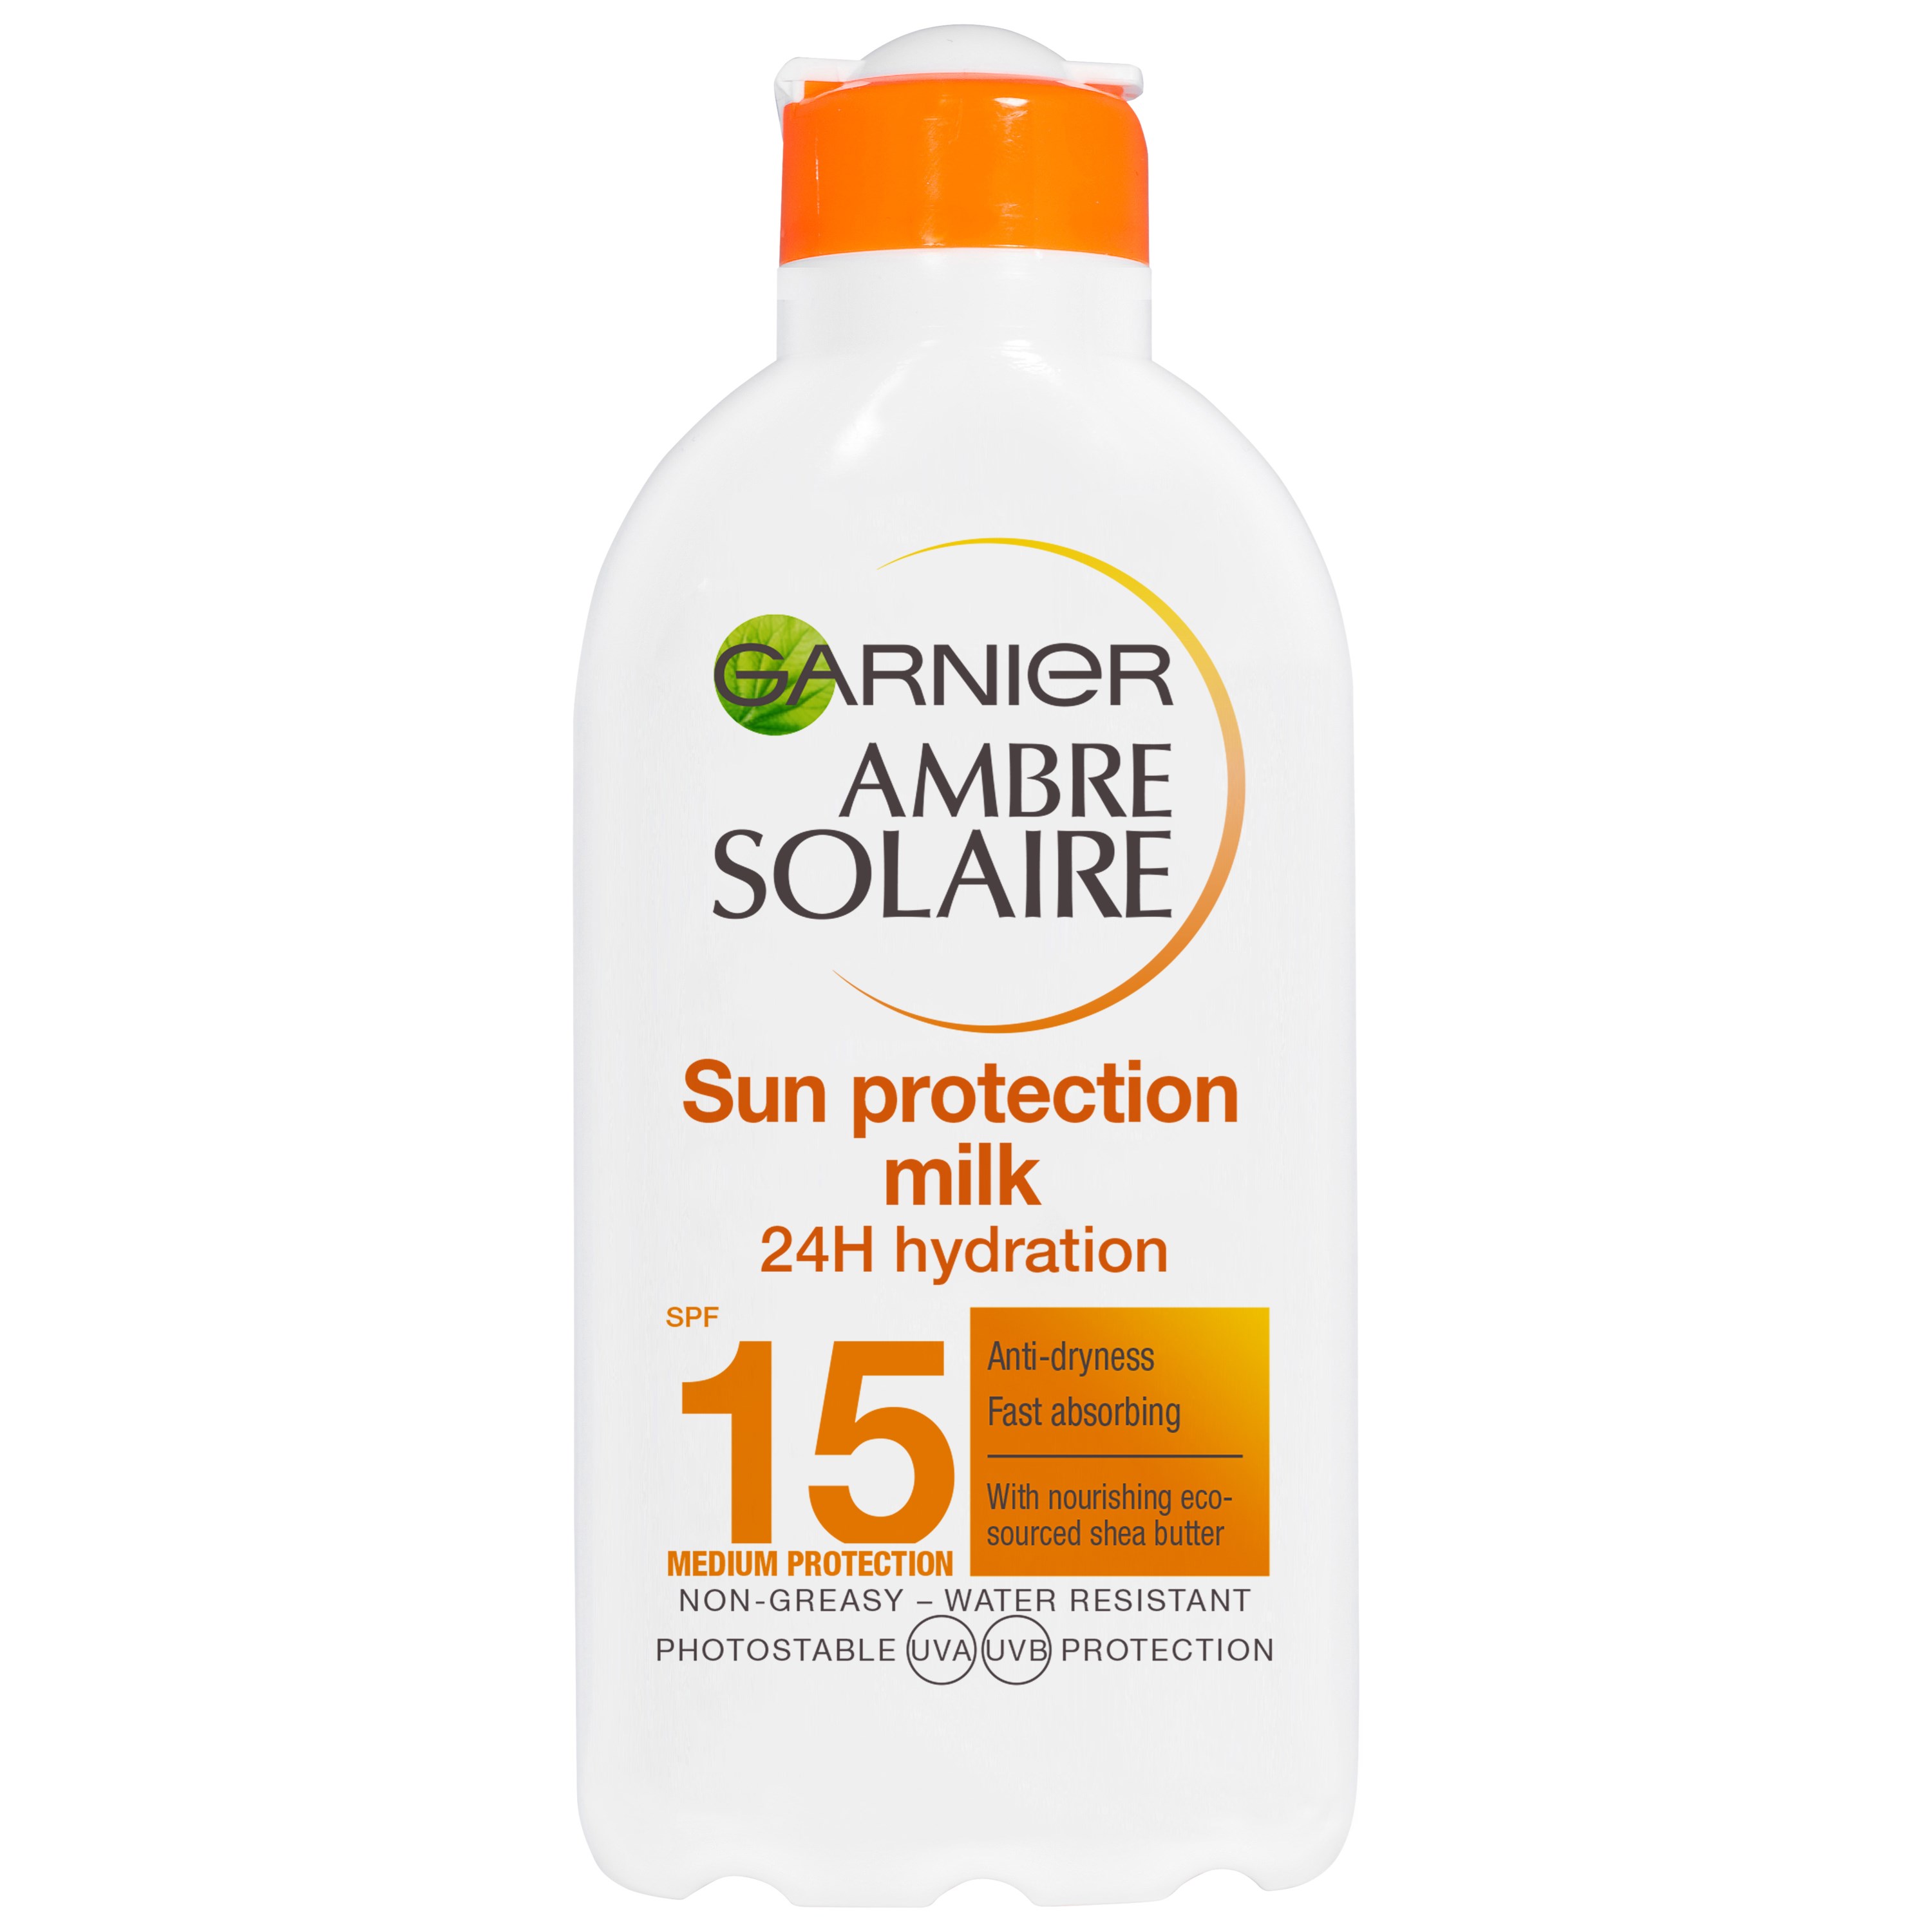 Garnier Ambre Solaire Sun Protection Milk 24 Hydration SPF 15 200 ml